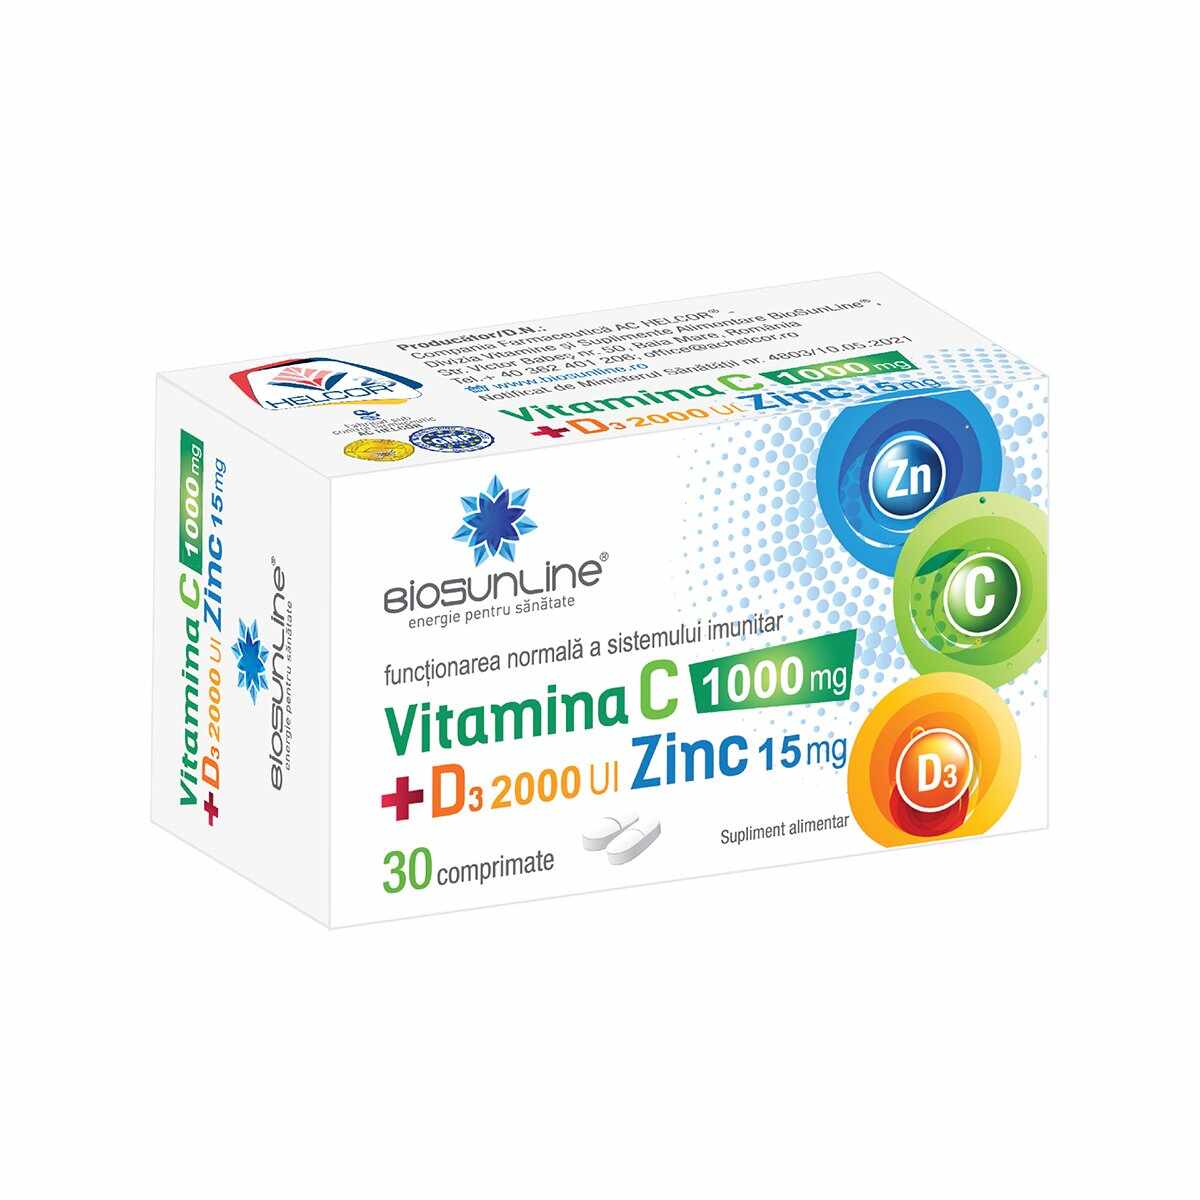 BioSunLine Vitamina C 1000 mg + D3 2000 UI + Zinc 15 mg 30 comprimate